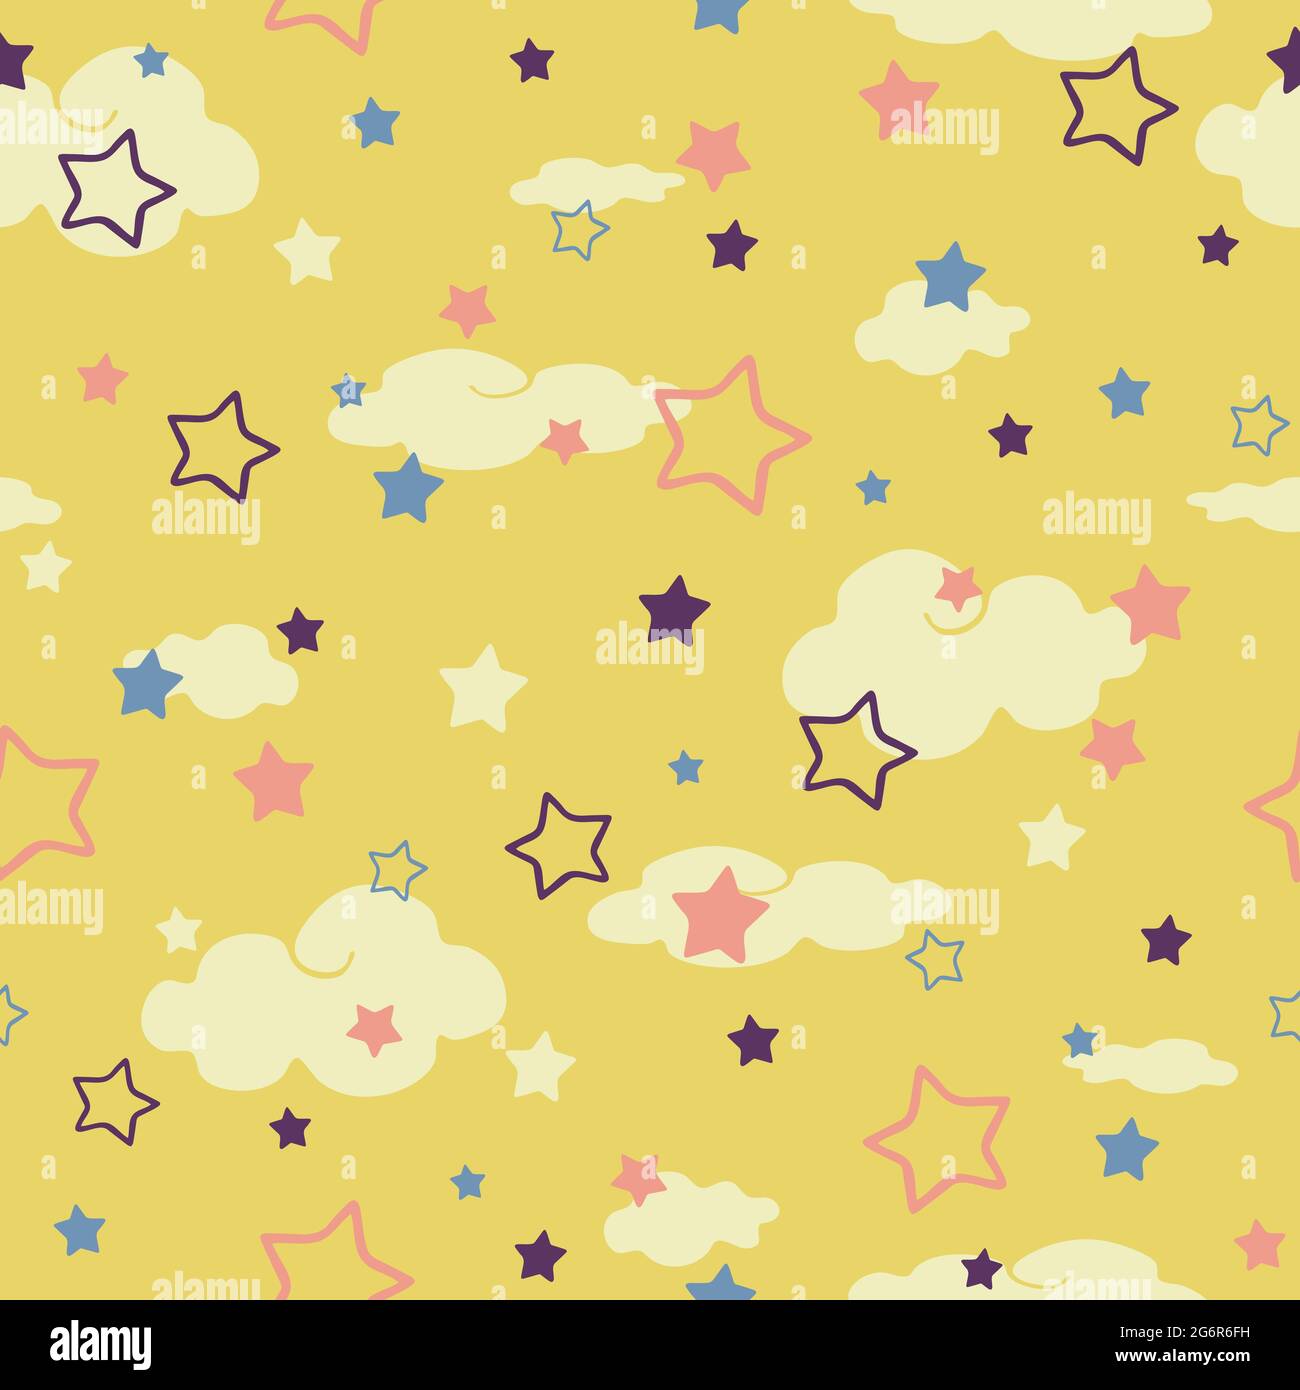 Nahtloses Vektormuster mit Wolken und Sternen auf gelbem Hintergrund. Einfaches Tapetendesign für Kinder. Baby Dusche Mode Textil. Stock Vektor